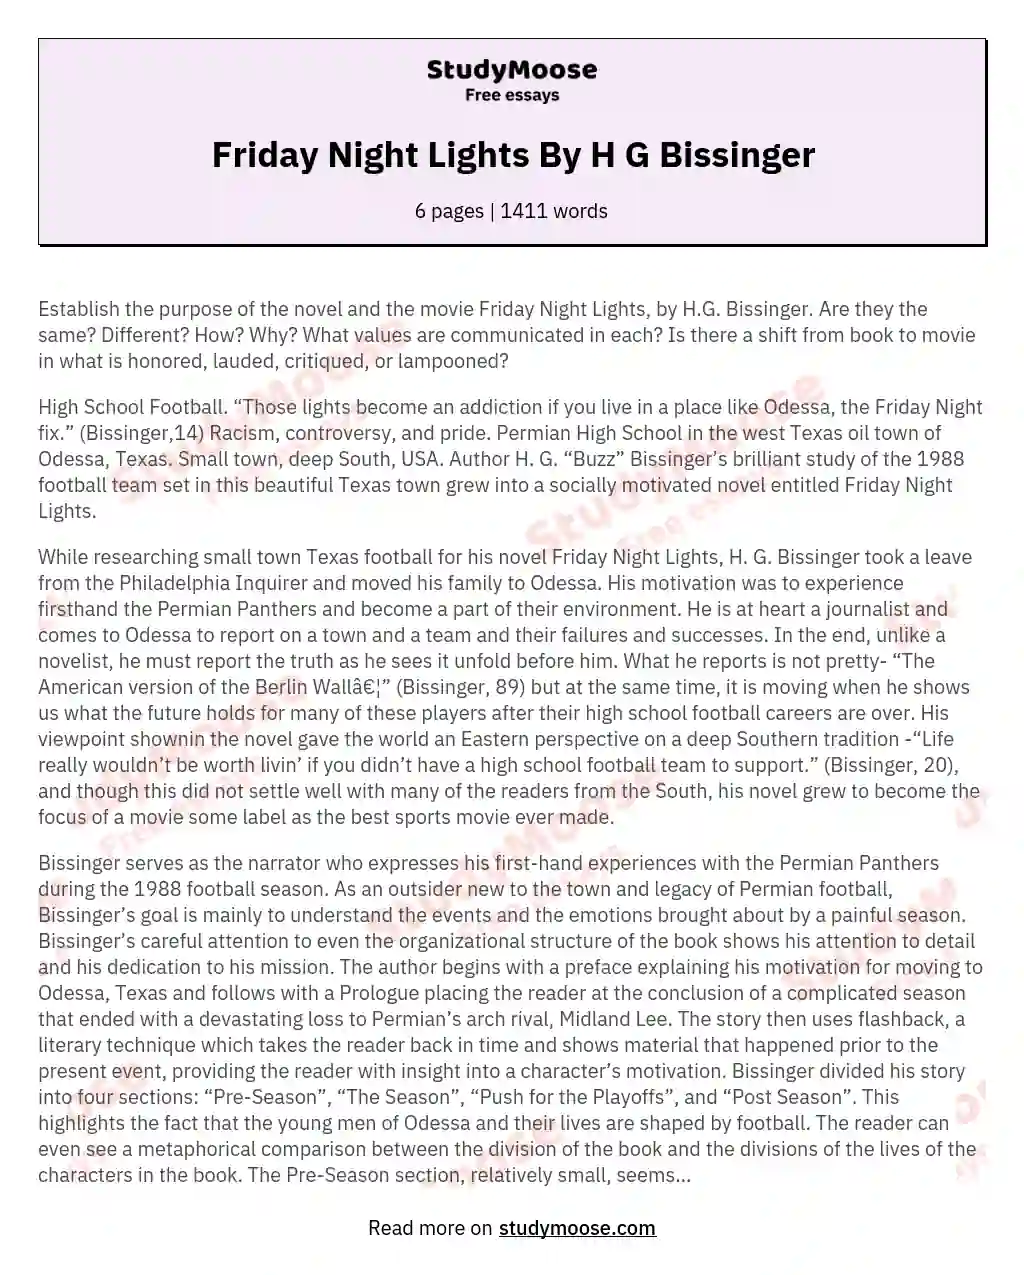 friday night lights argumentative essay